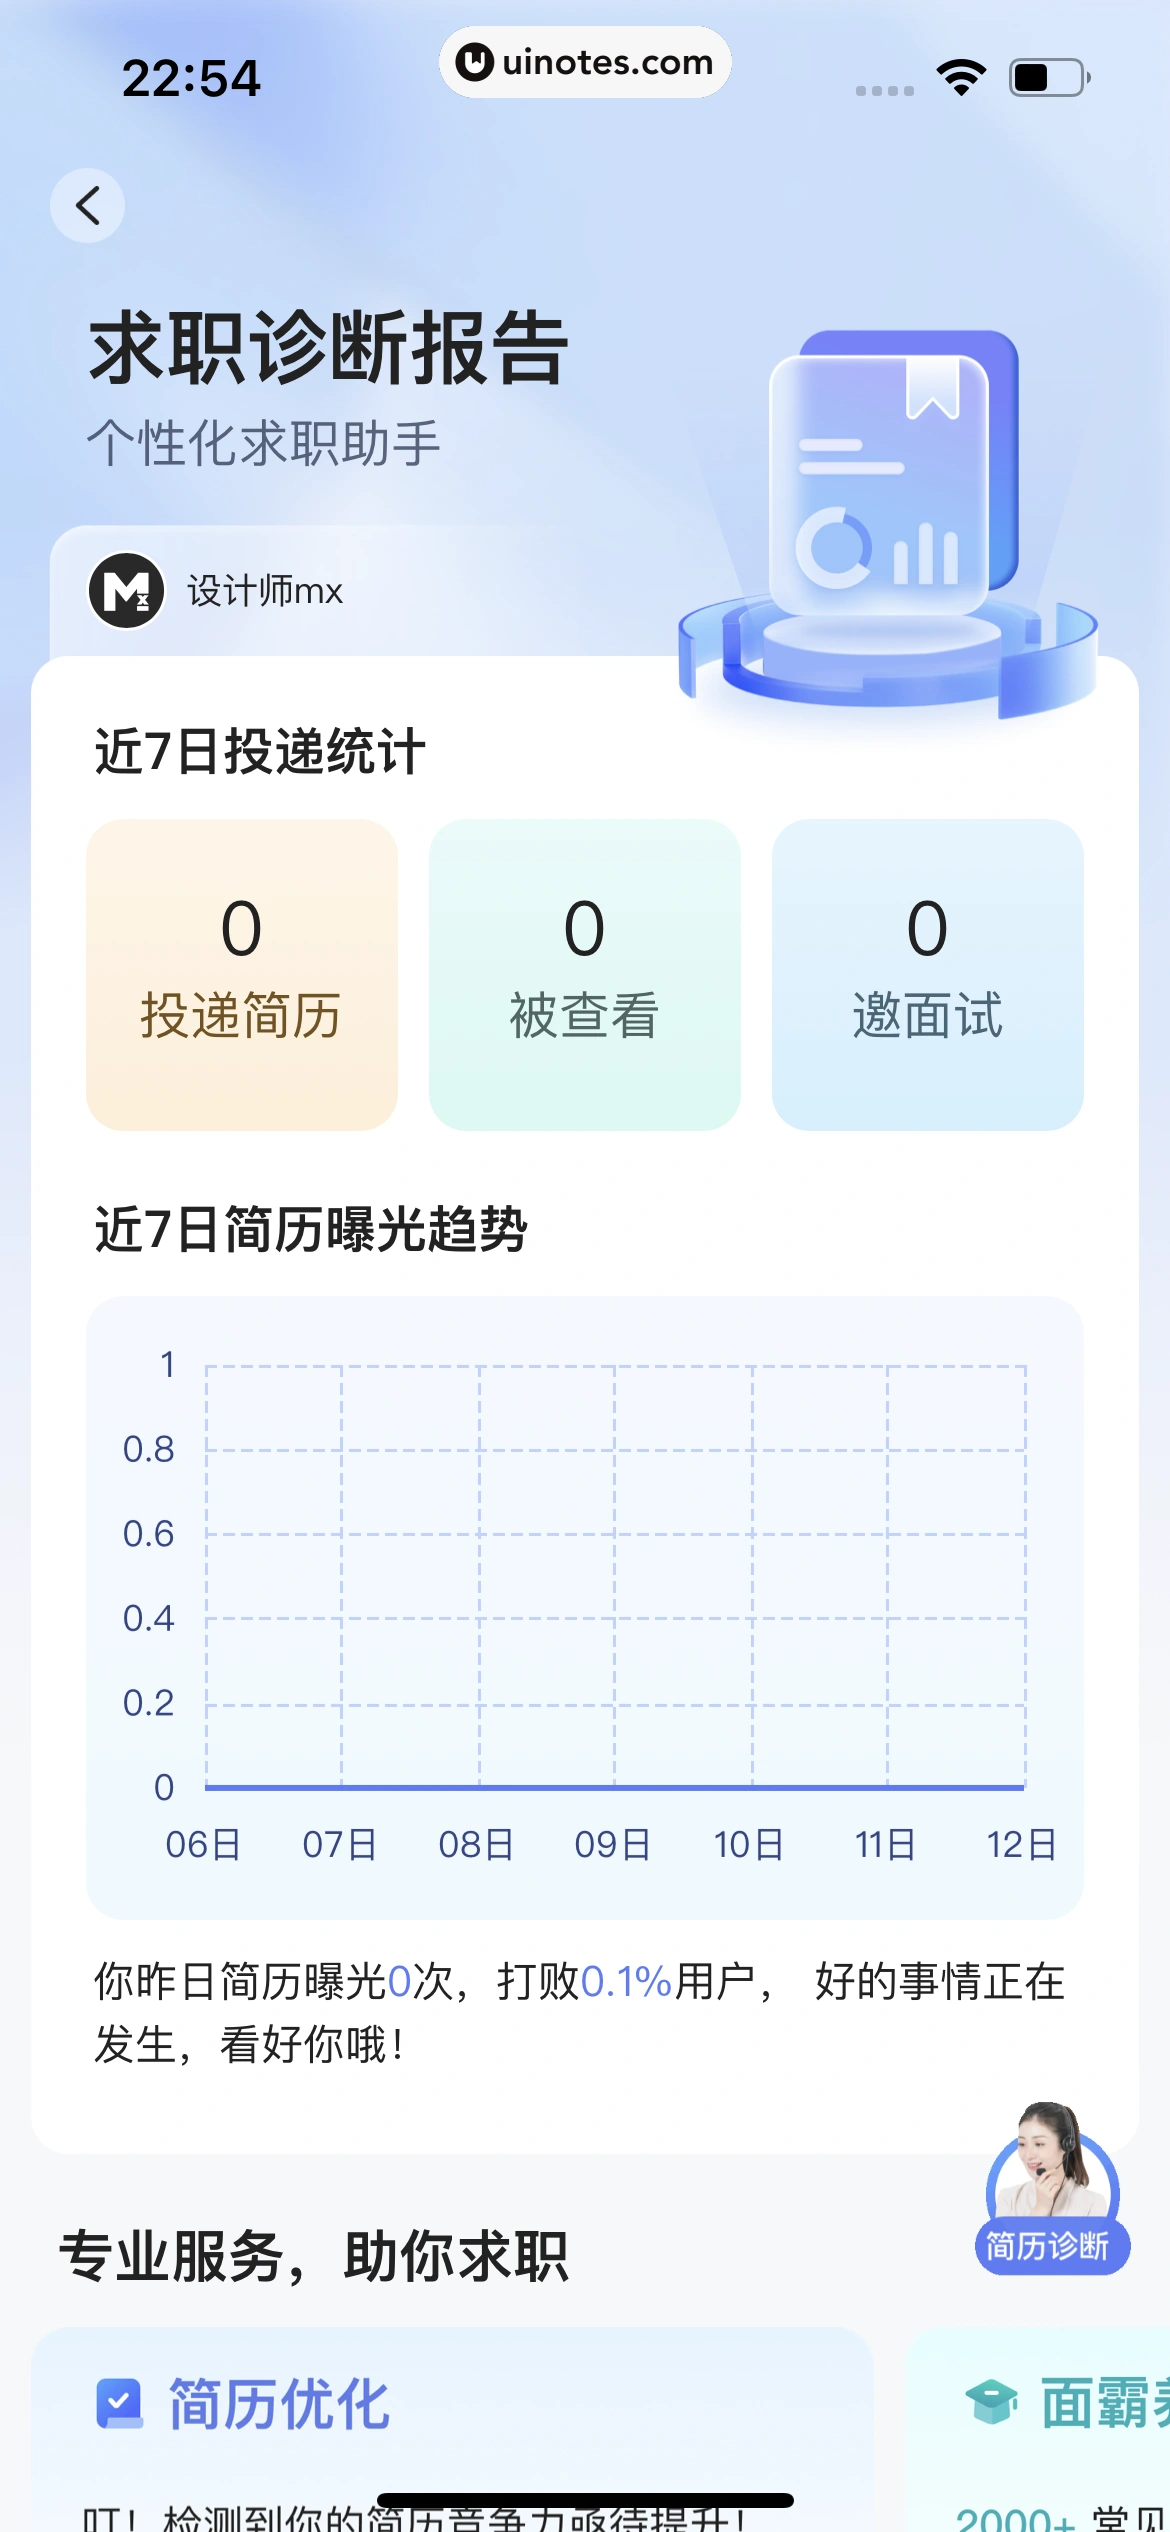 智联招聘 App 截图 342 - UI Notes